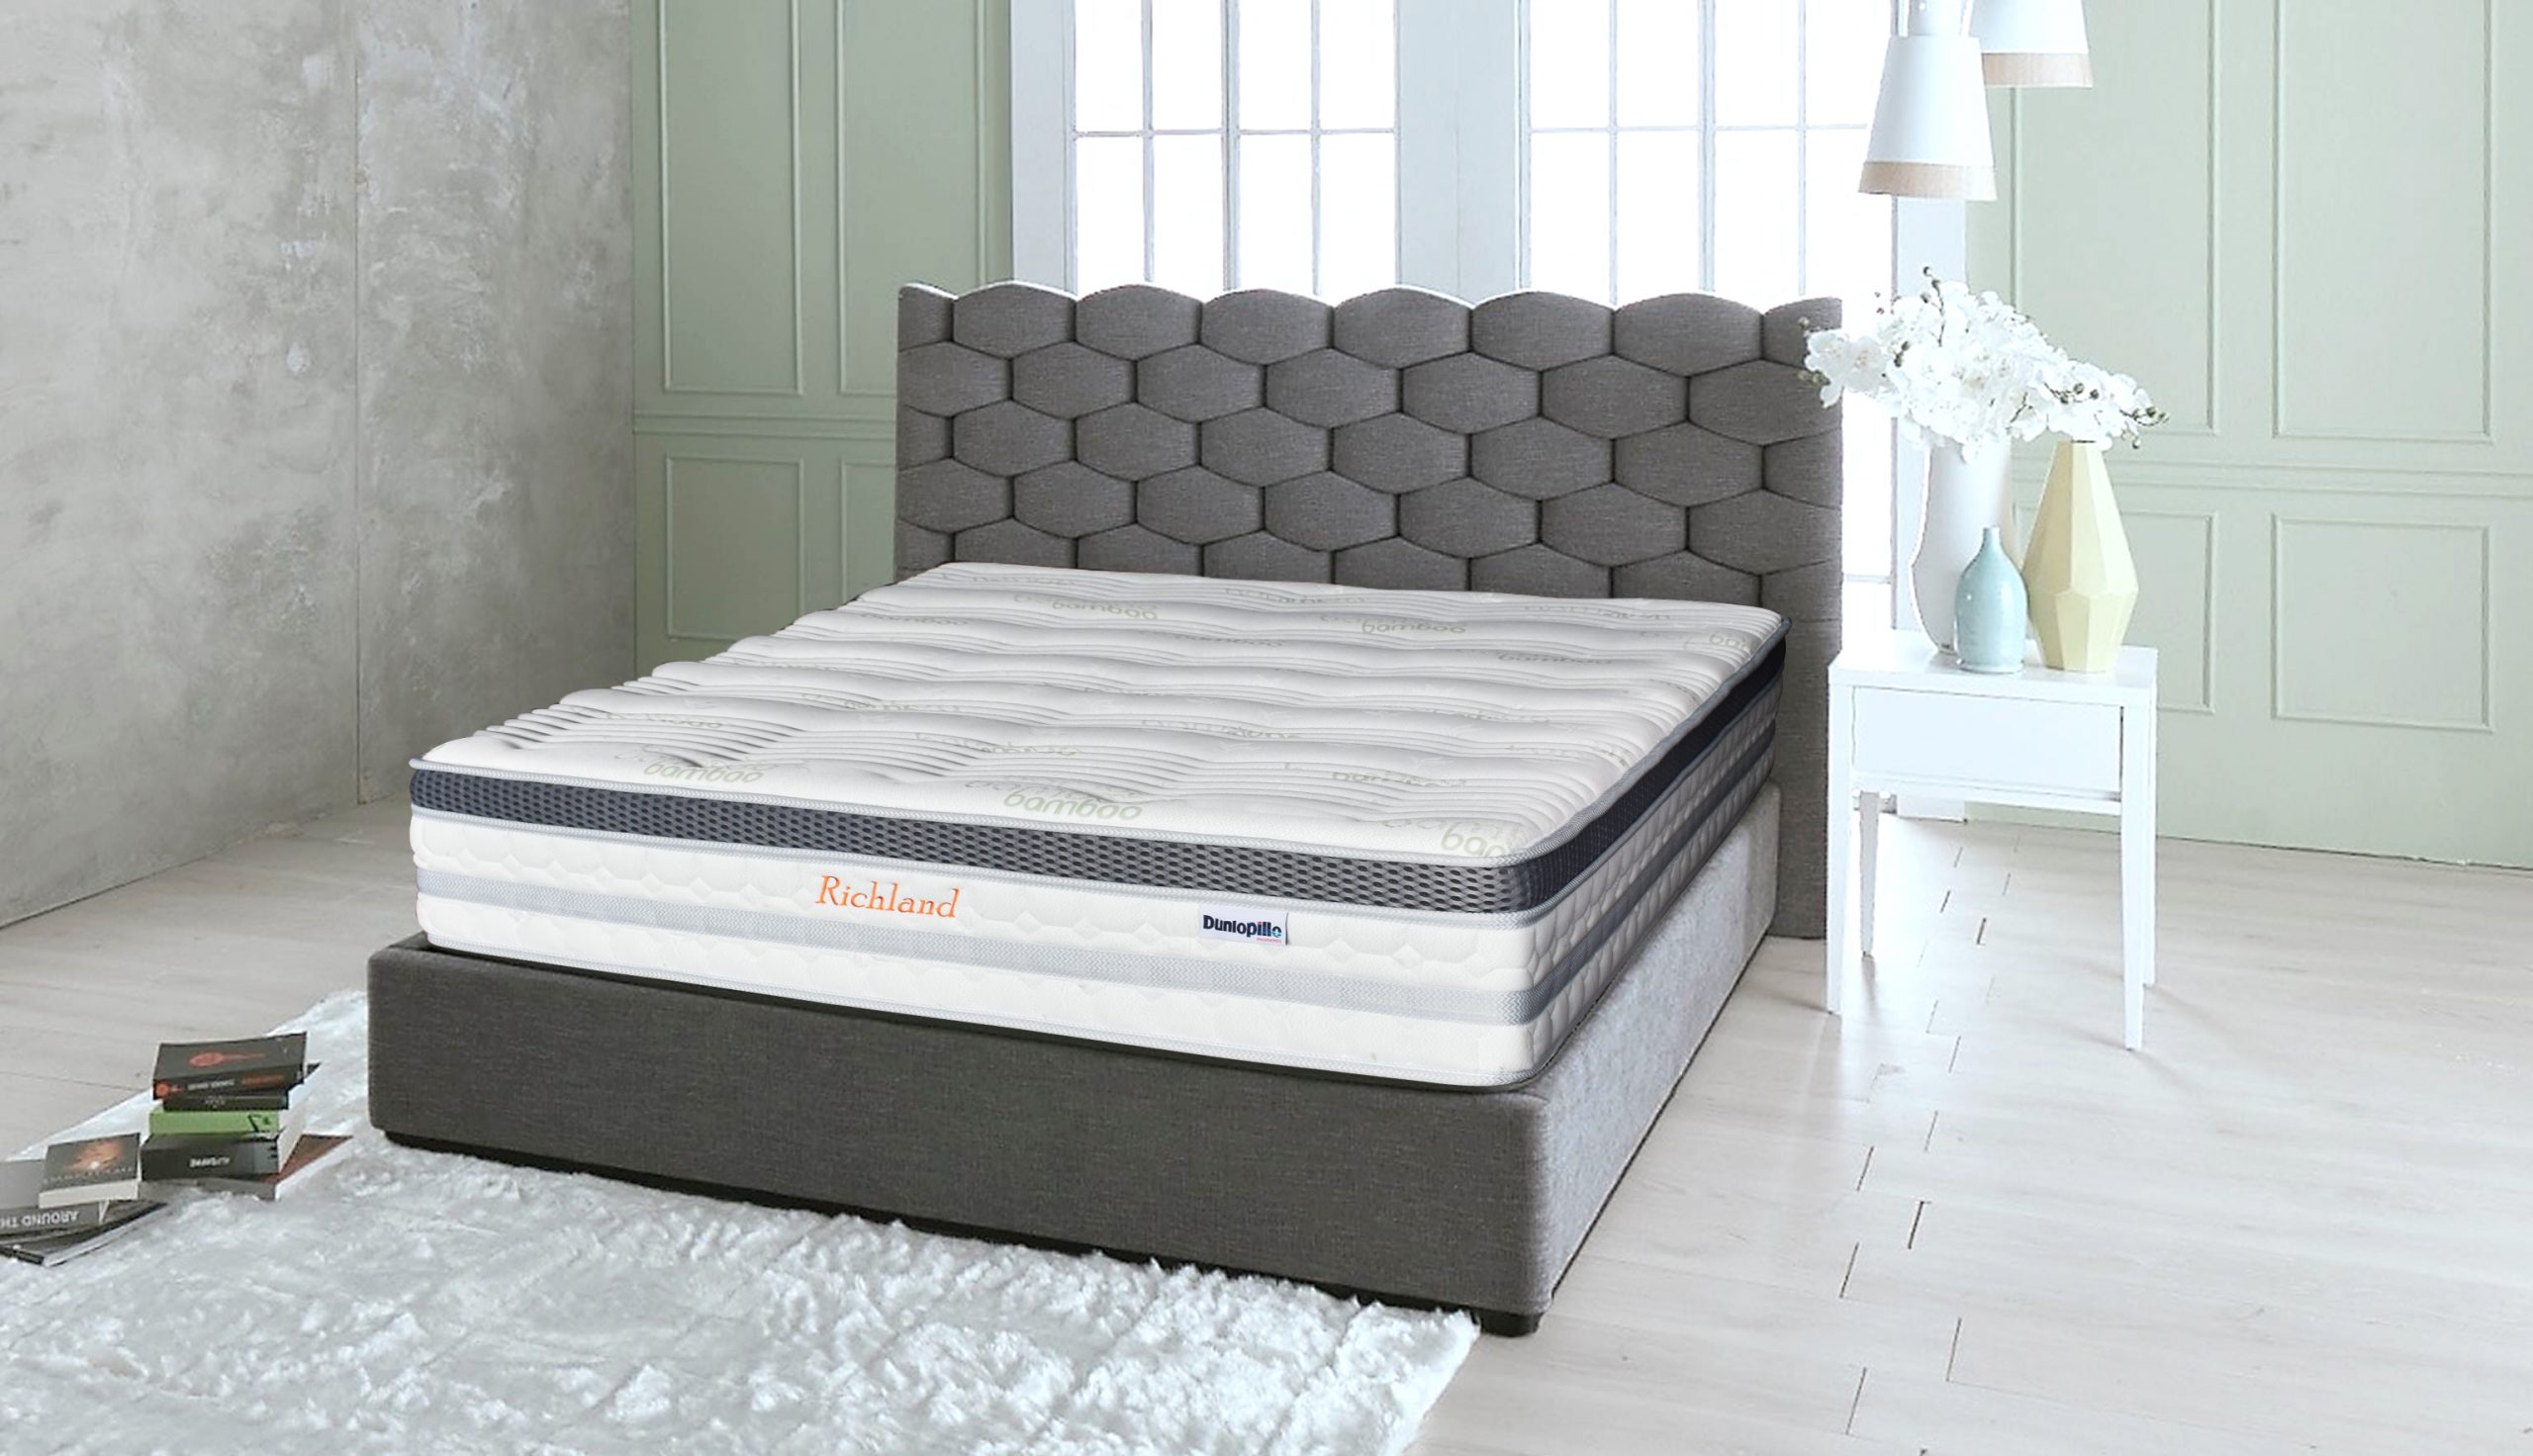 richland brand twin mattress